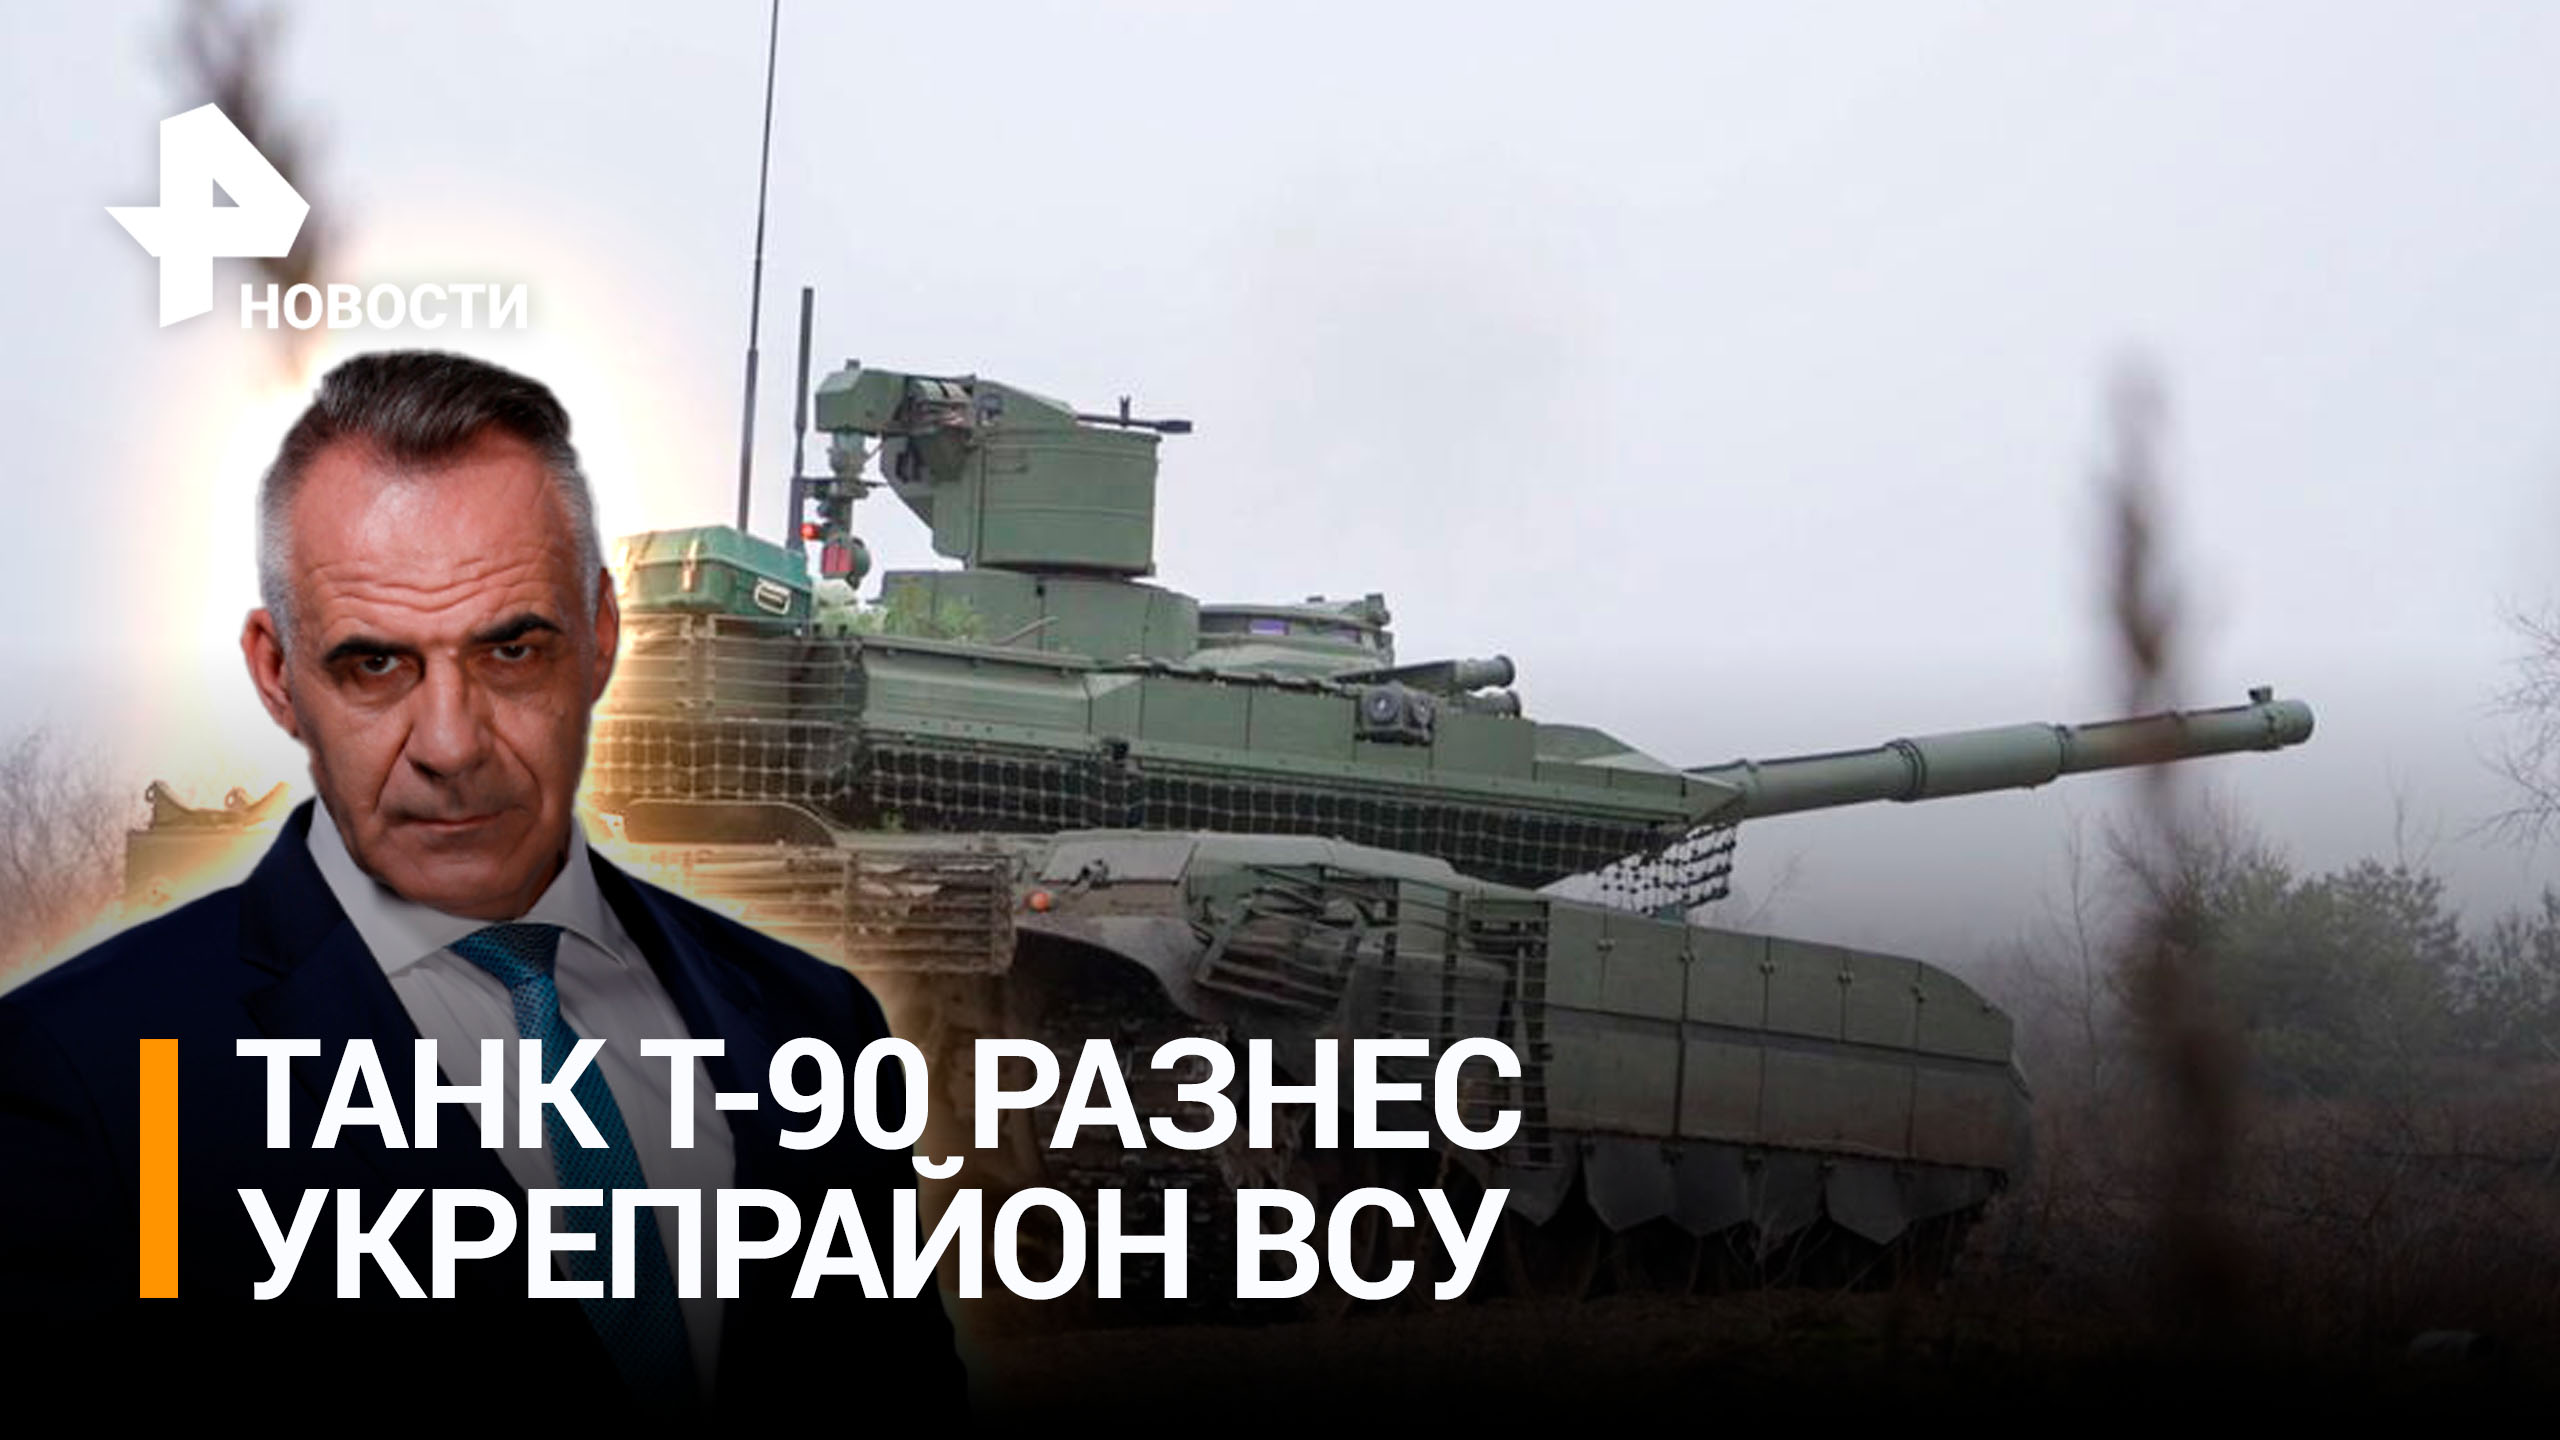 Новейший танк Т-90 одним ударом разнес укрепрайон ВСУ в Донбассе / ИТОГИ с Петром Марченко